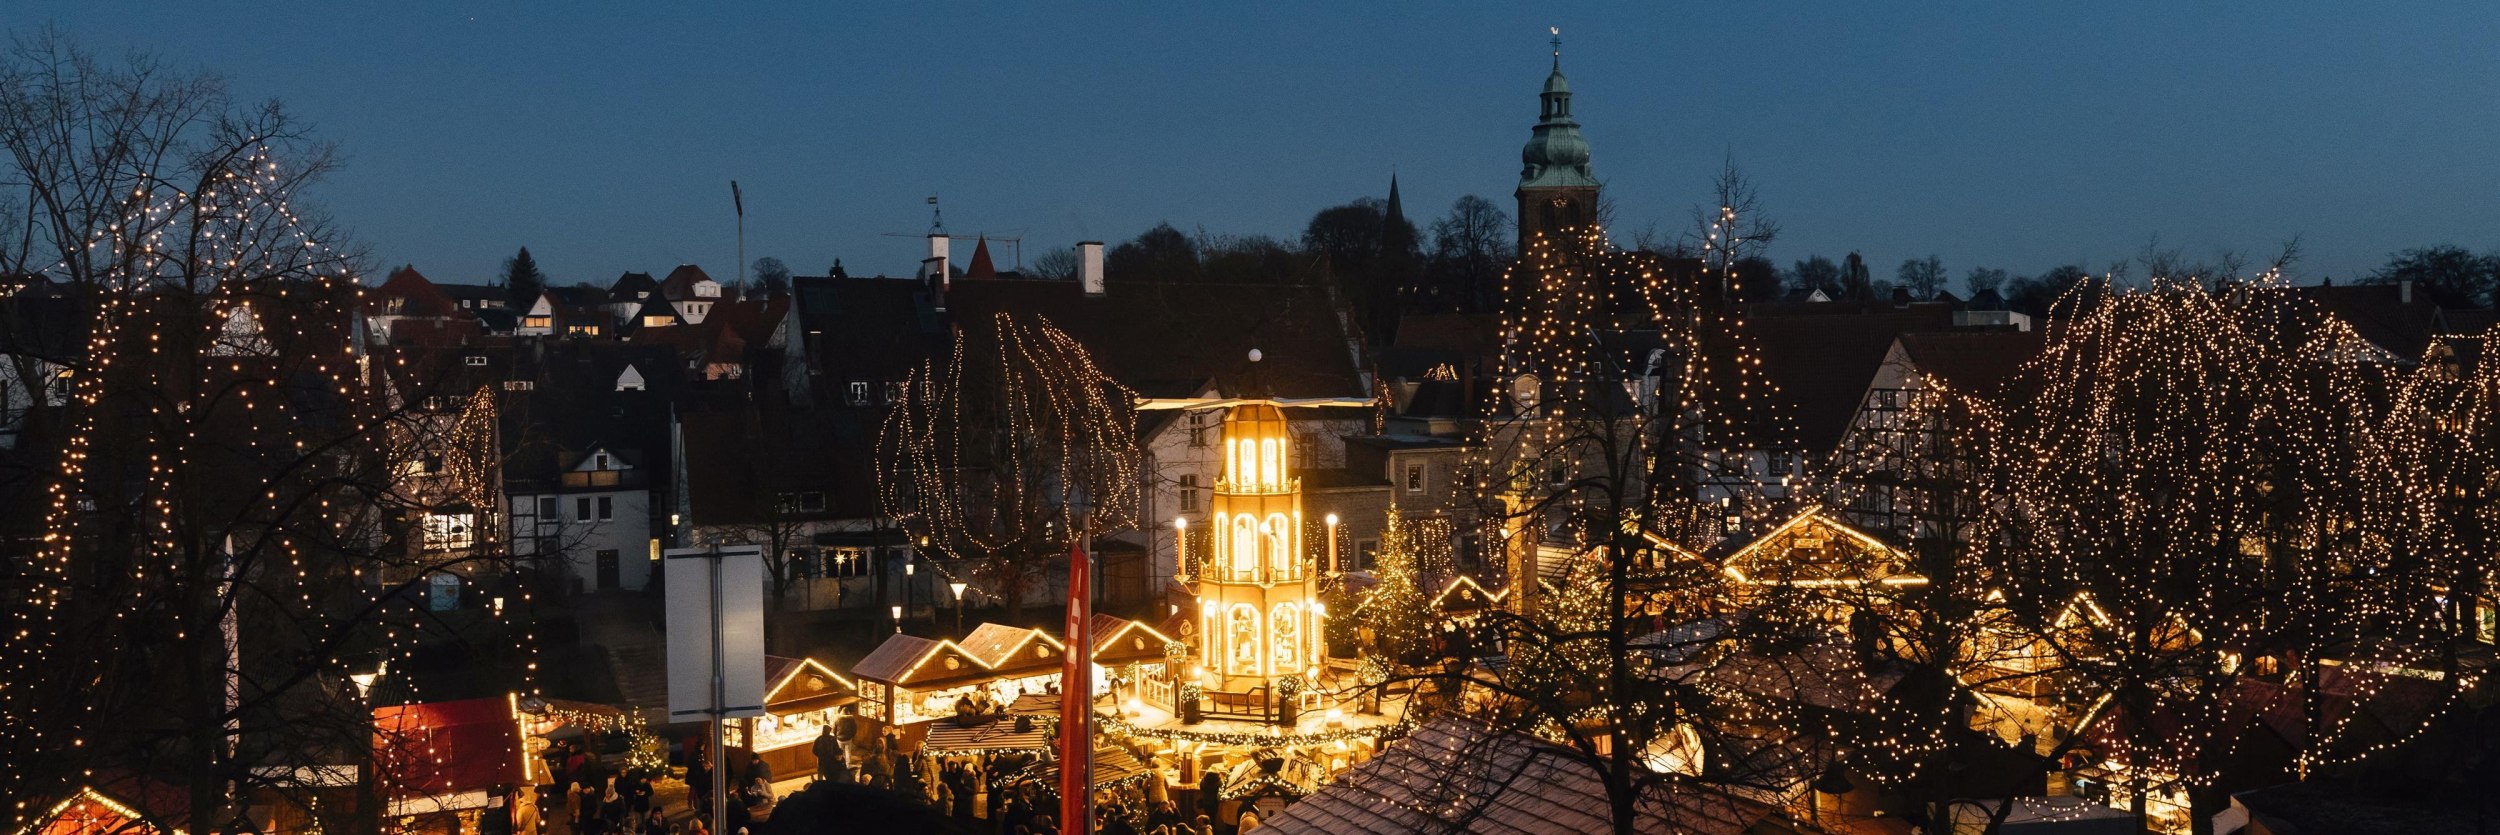 Weihnachtsmarkt Bad Salzuflen, © Stadt Bad Salzuflen/M. Adamski